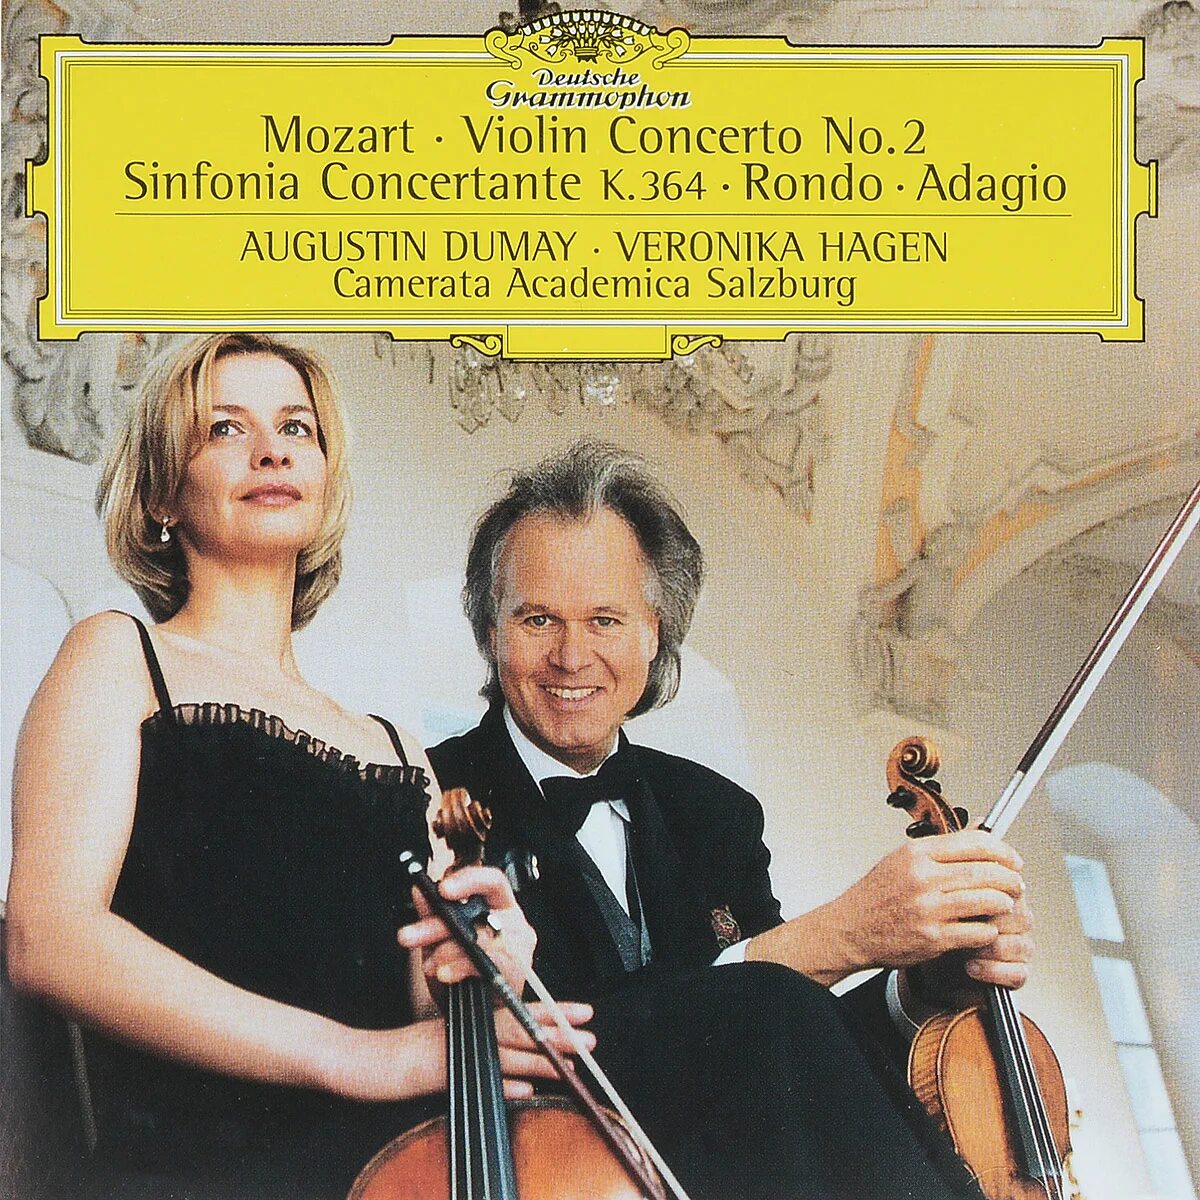 Violin concerto no 2. Mozart: Sinfonia Concertante. Sinfonia Concertante, k 364. Mozart Violin. Моцарт Адажио и Рондо.